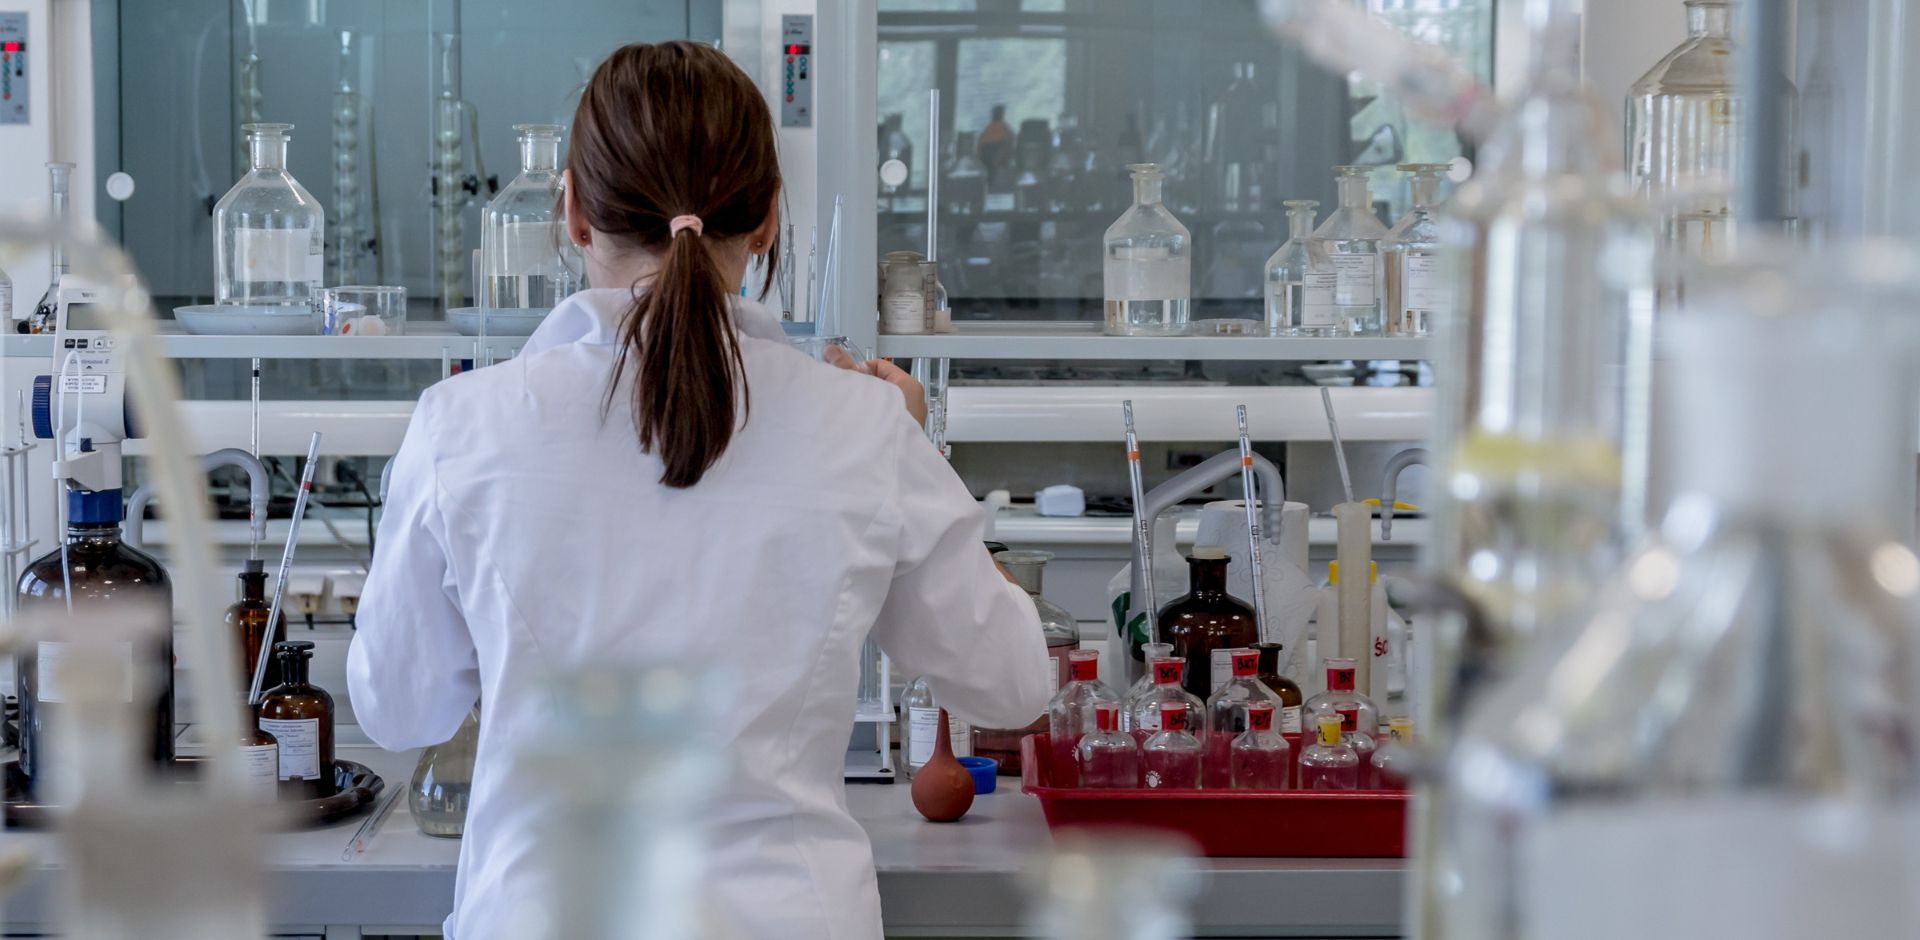 Giovane ragazza di spalle indossa un camice bianco all'interno di un laboratorio scientifico